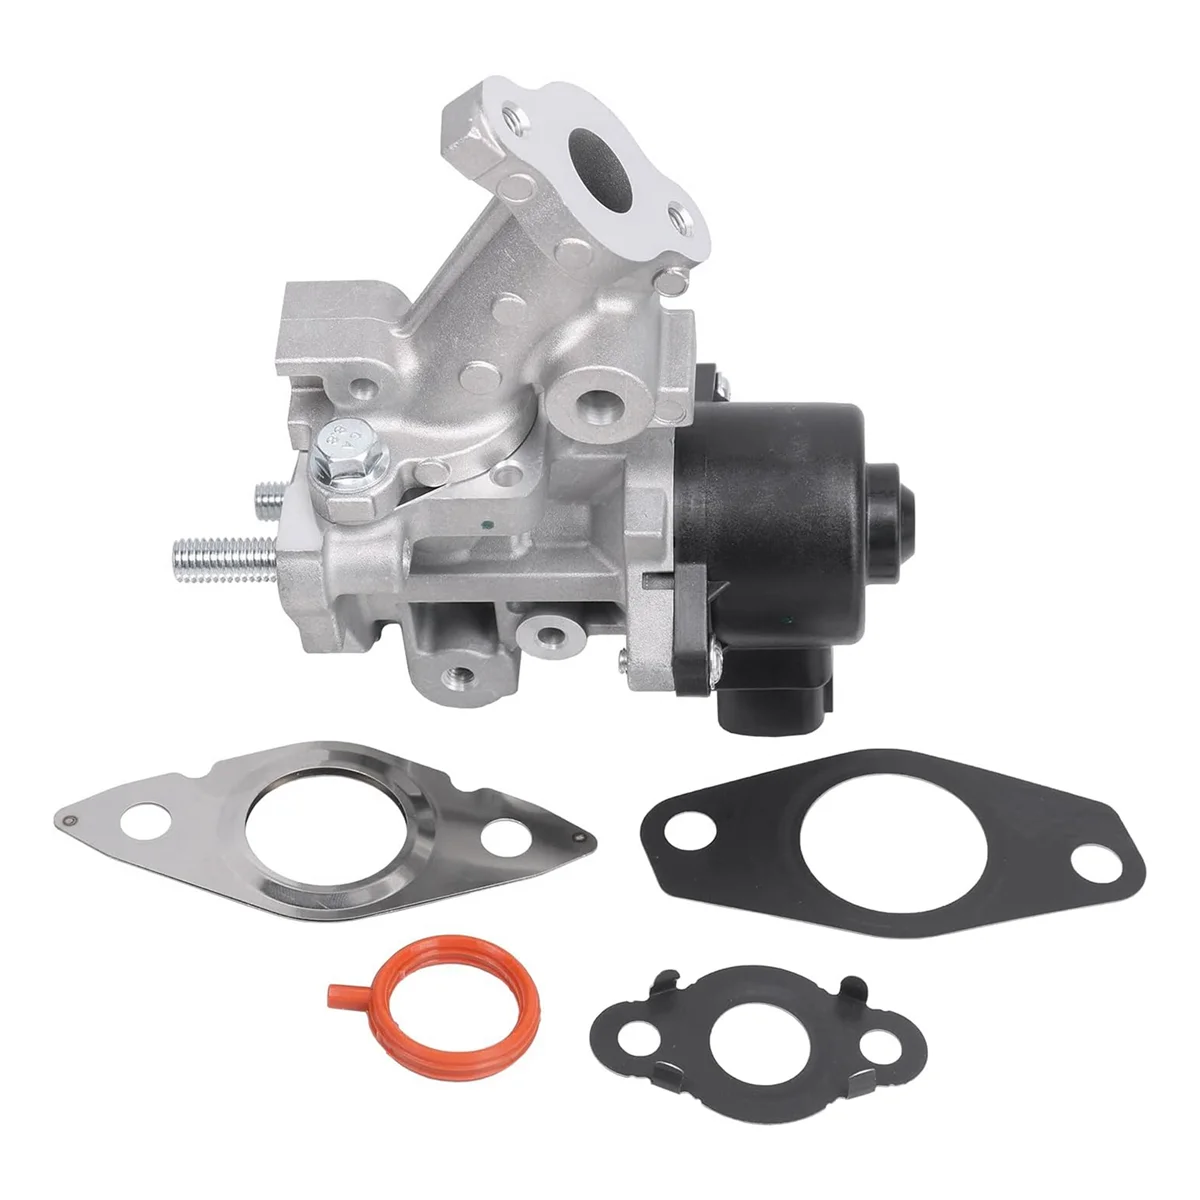 

04004-58137 EGR Valve Assembly Gasket Kit for Toyota Lexus 25620-37120